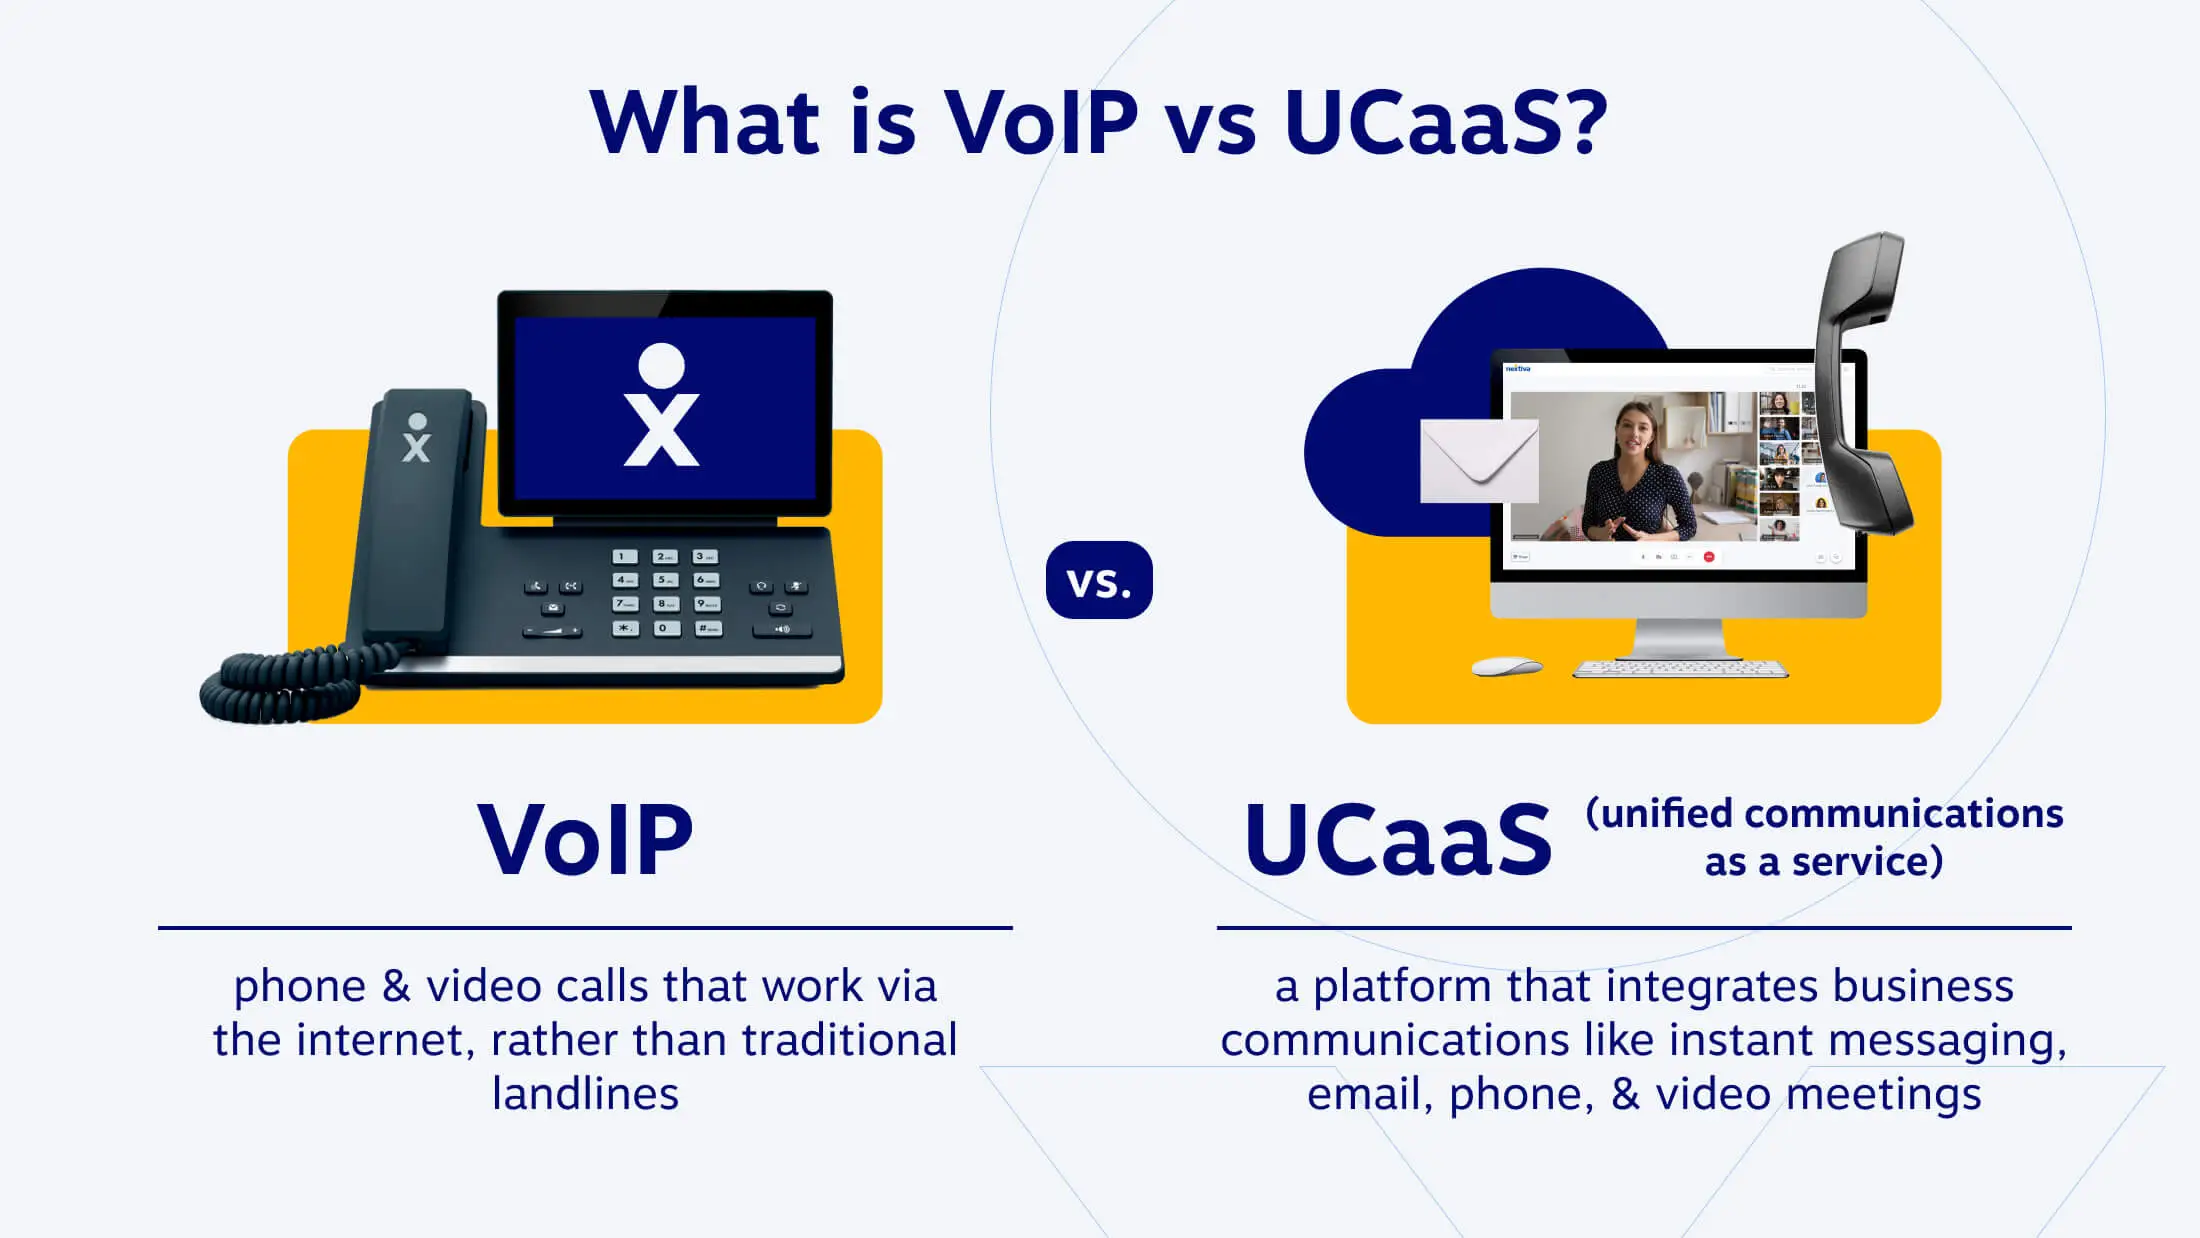 qué_es_voIP_vs_uCaaS